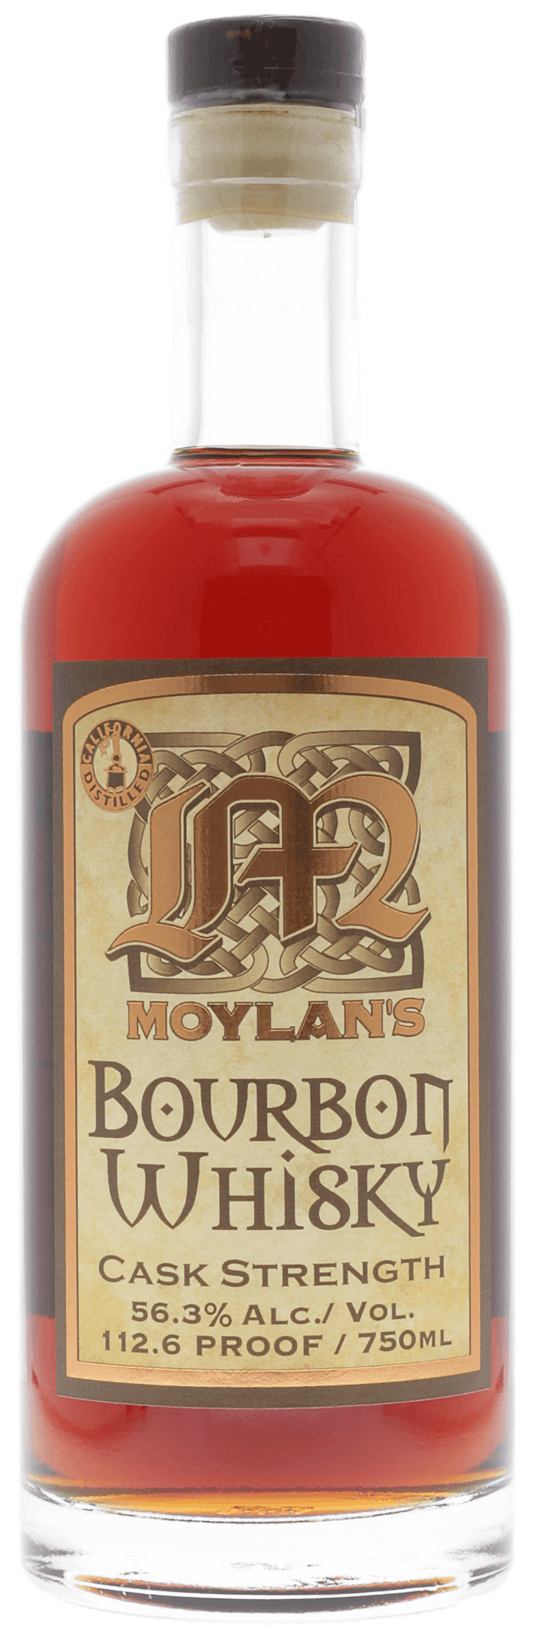 Moylan's Cask Strength Bourbon Whisky